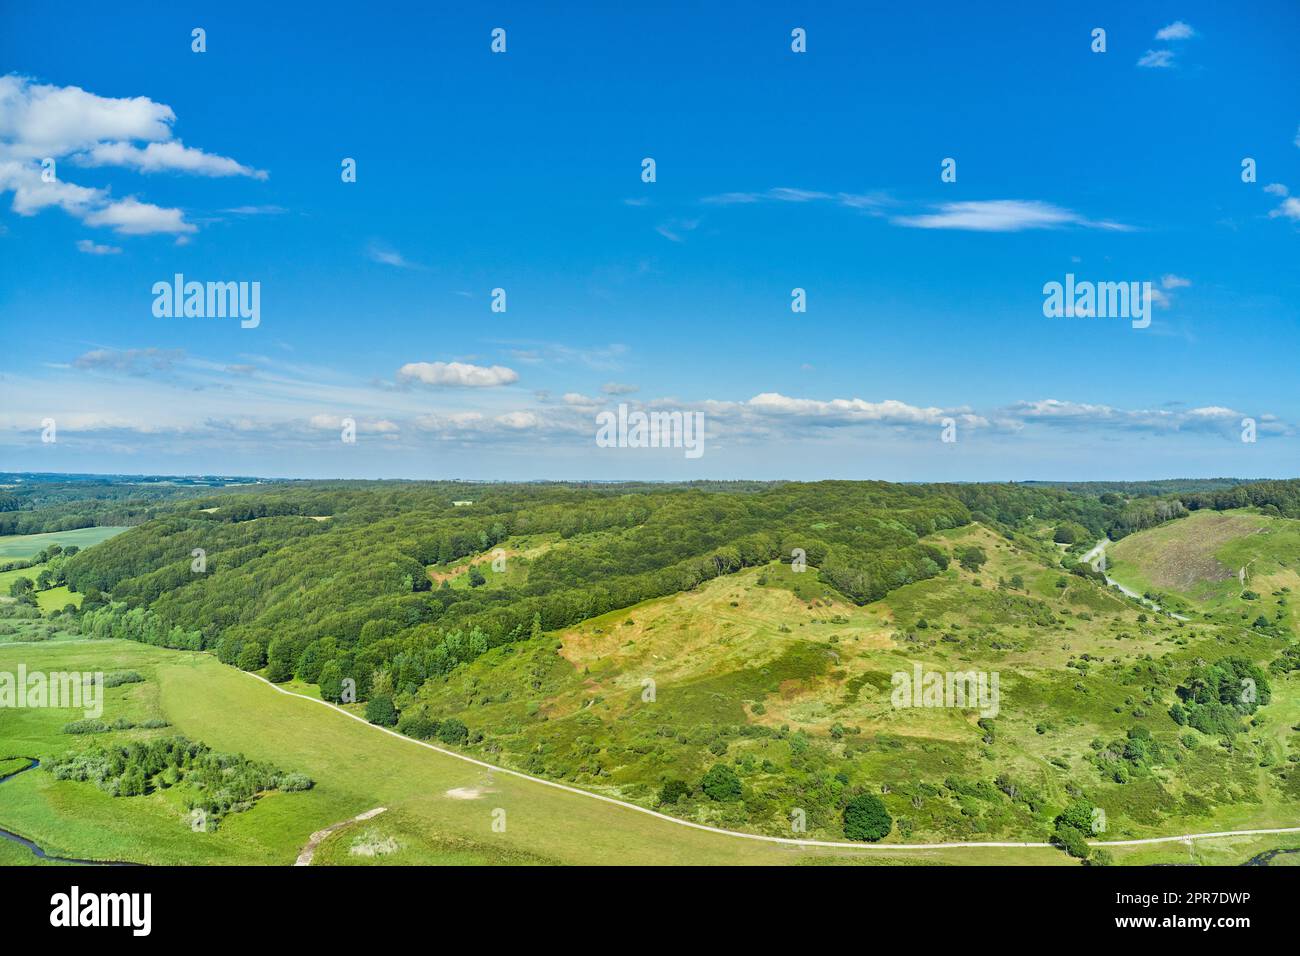 Un paesaggio agricolo con prati verdi e colline in estate. Vista aerea di una fattoria con erba lussureggiante contro un cielo blu nuvoloso con spazio copioso. Tranquillo terreno agricolo con viste panoramiche rilassanti e rilassanti Foto Stock